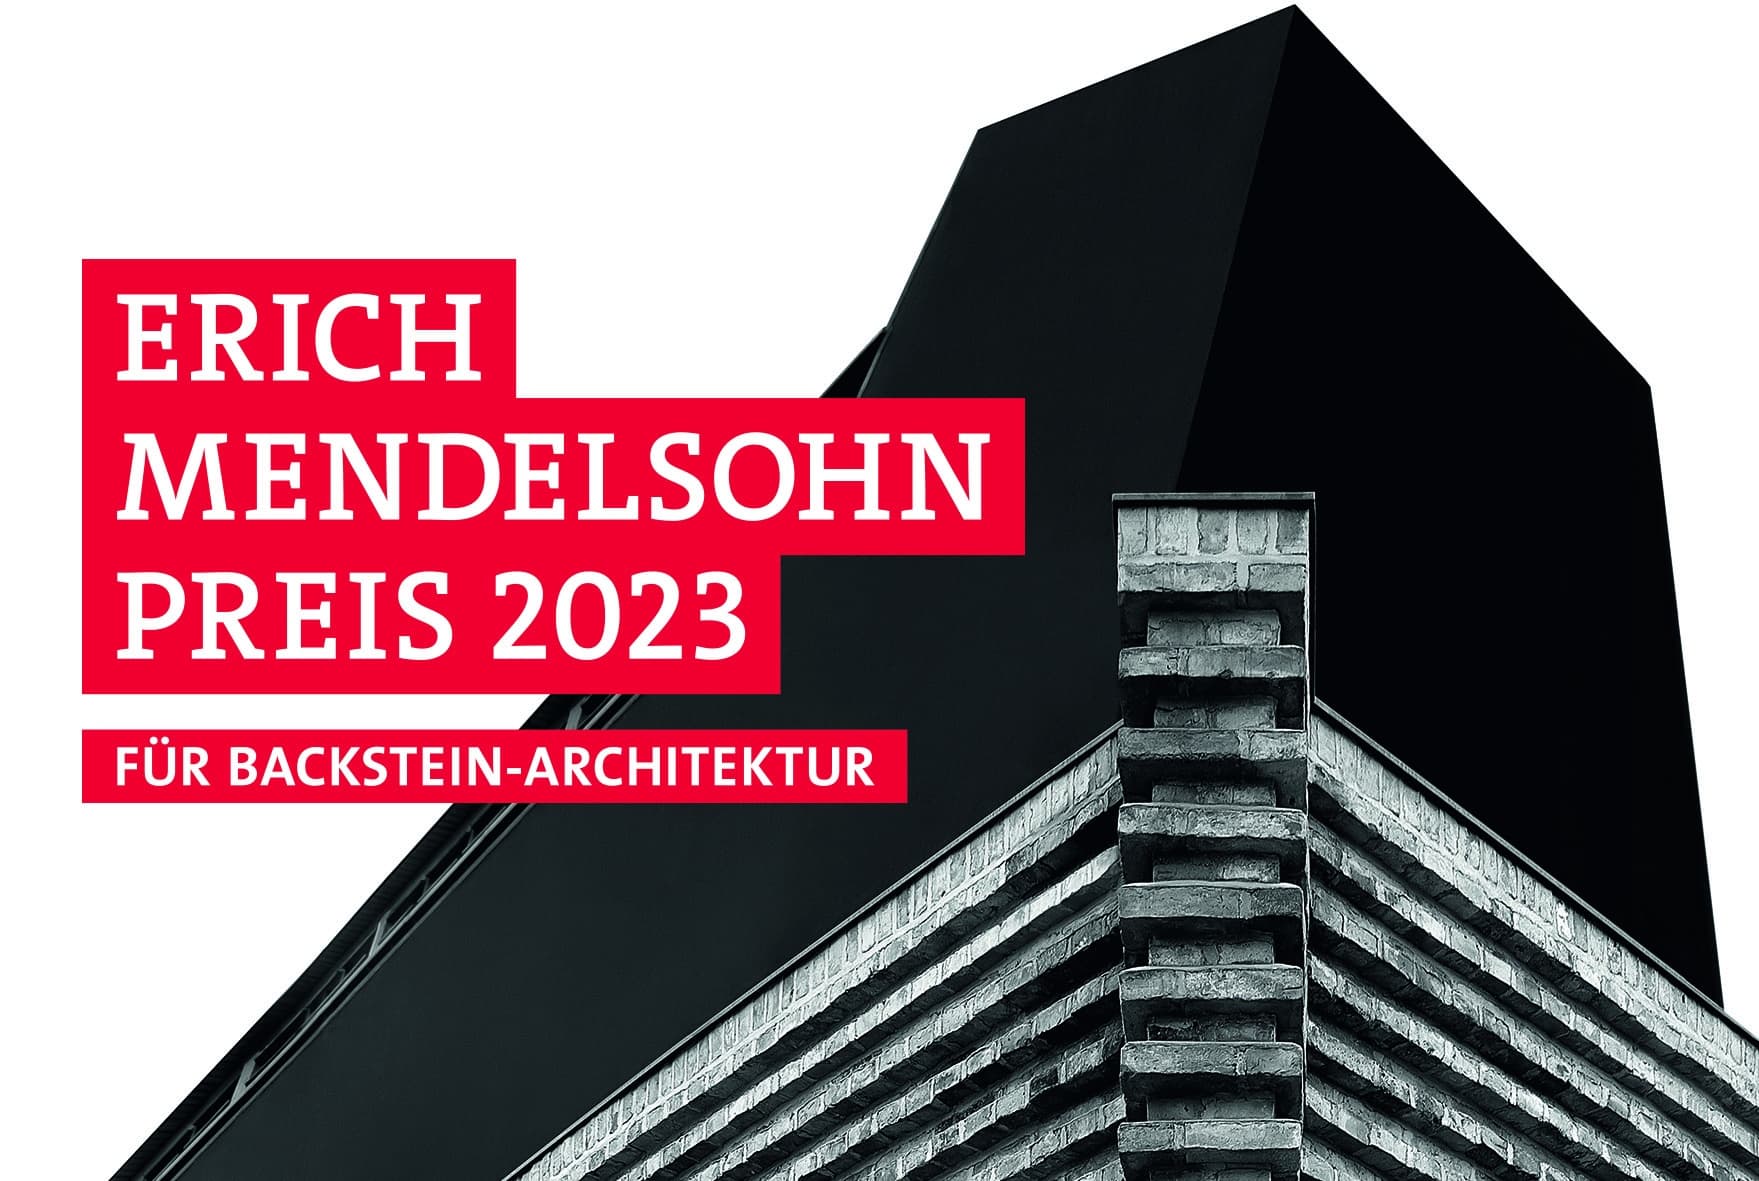 Alle drei Jahre werden mit dem Erich-Mendelsohn-Preis die architektonisch wertvollsten Projekte rund um den Backstein ausgezeichnet.